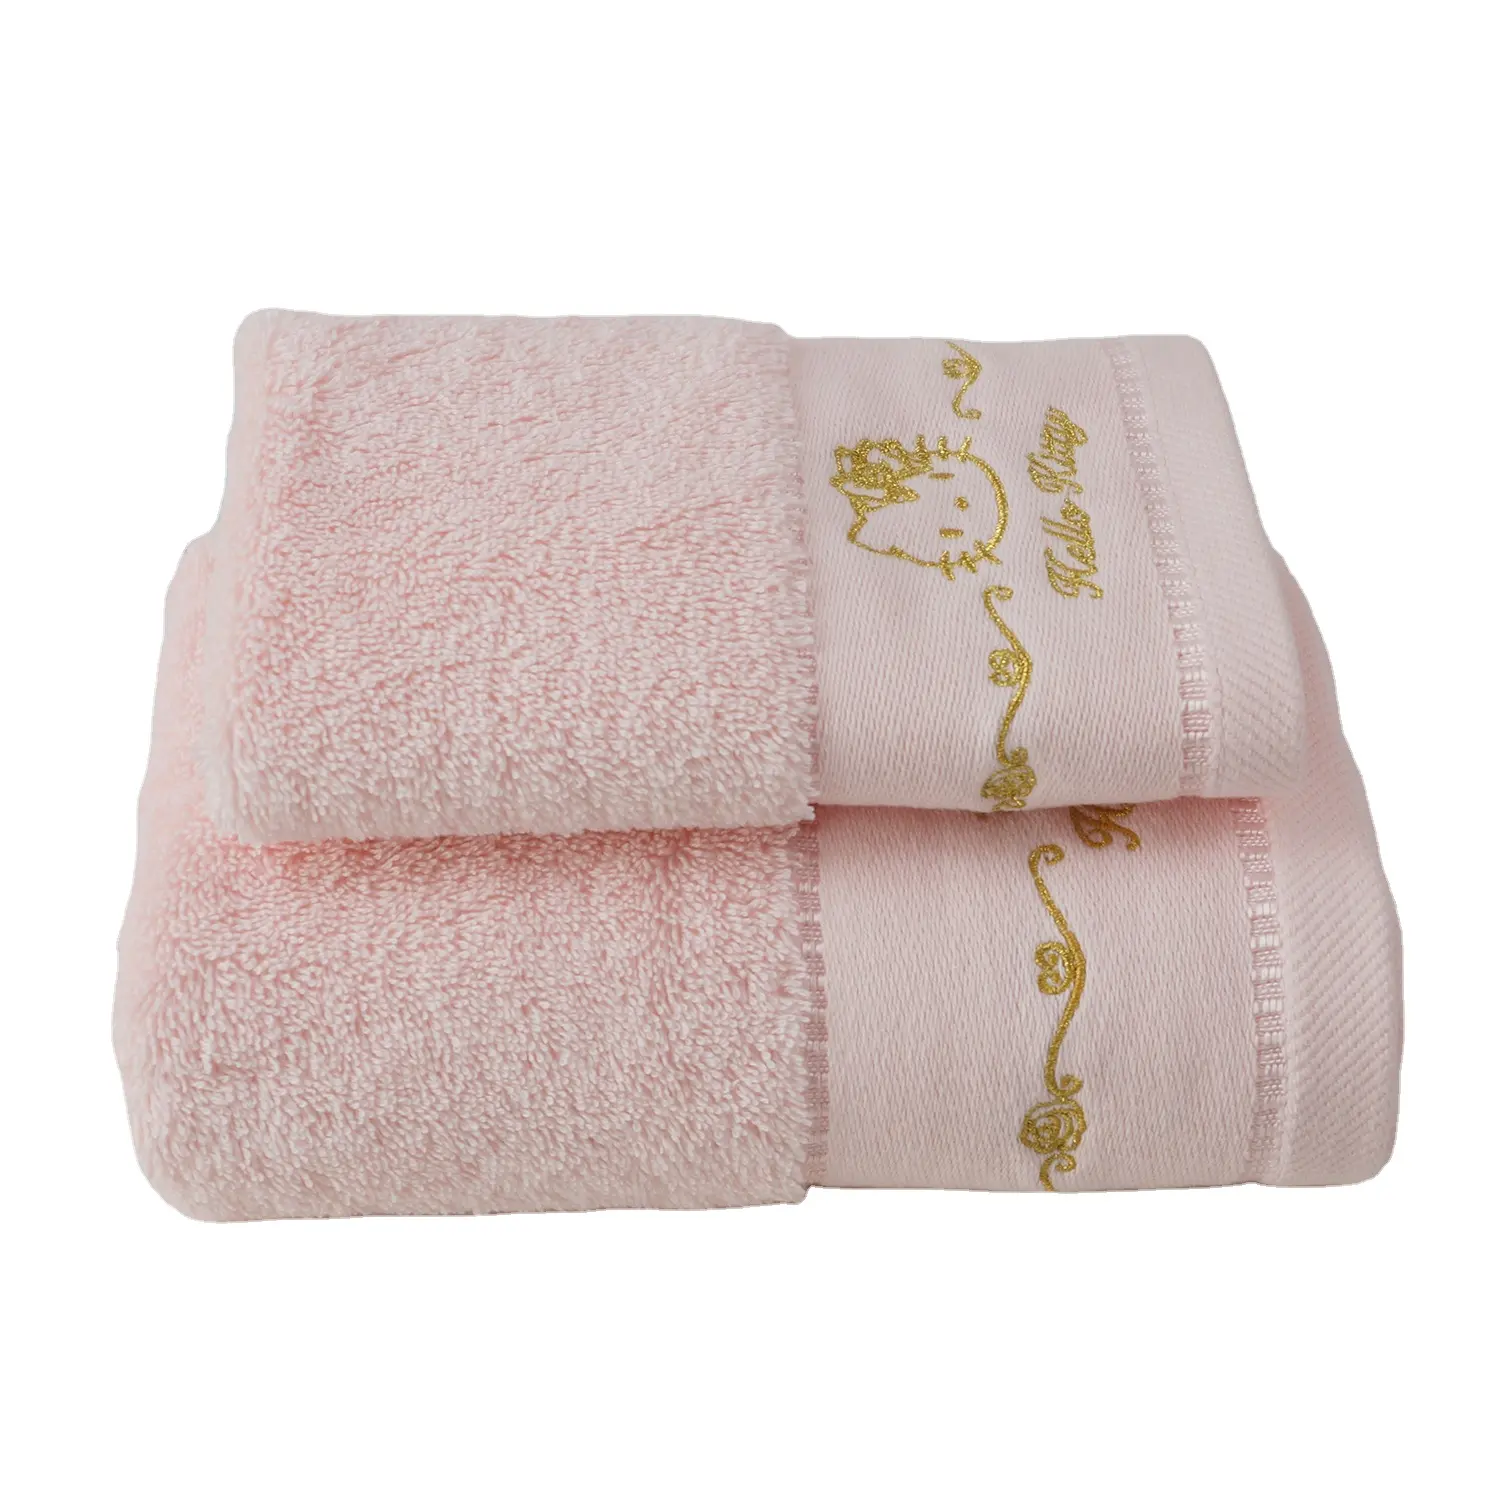 Оптовая продажа, качественные товары для отеля, розовое полотенце для лица, 100 хлопок